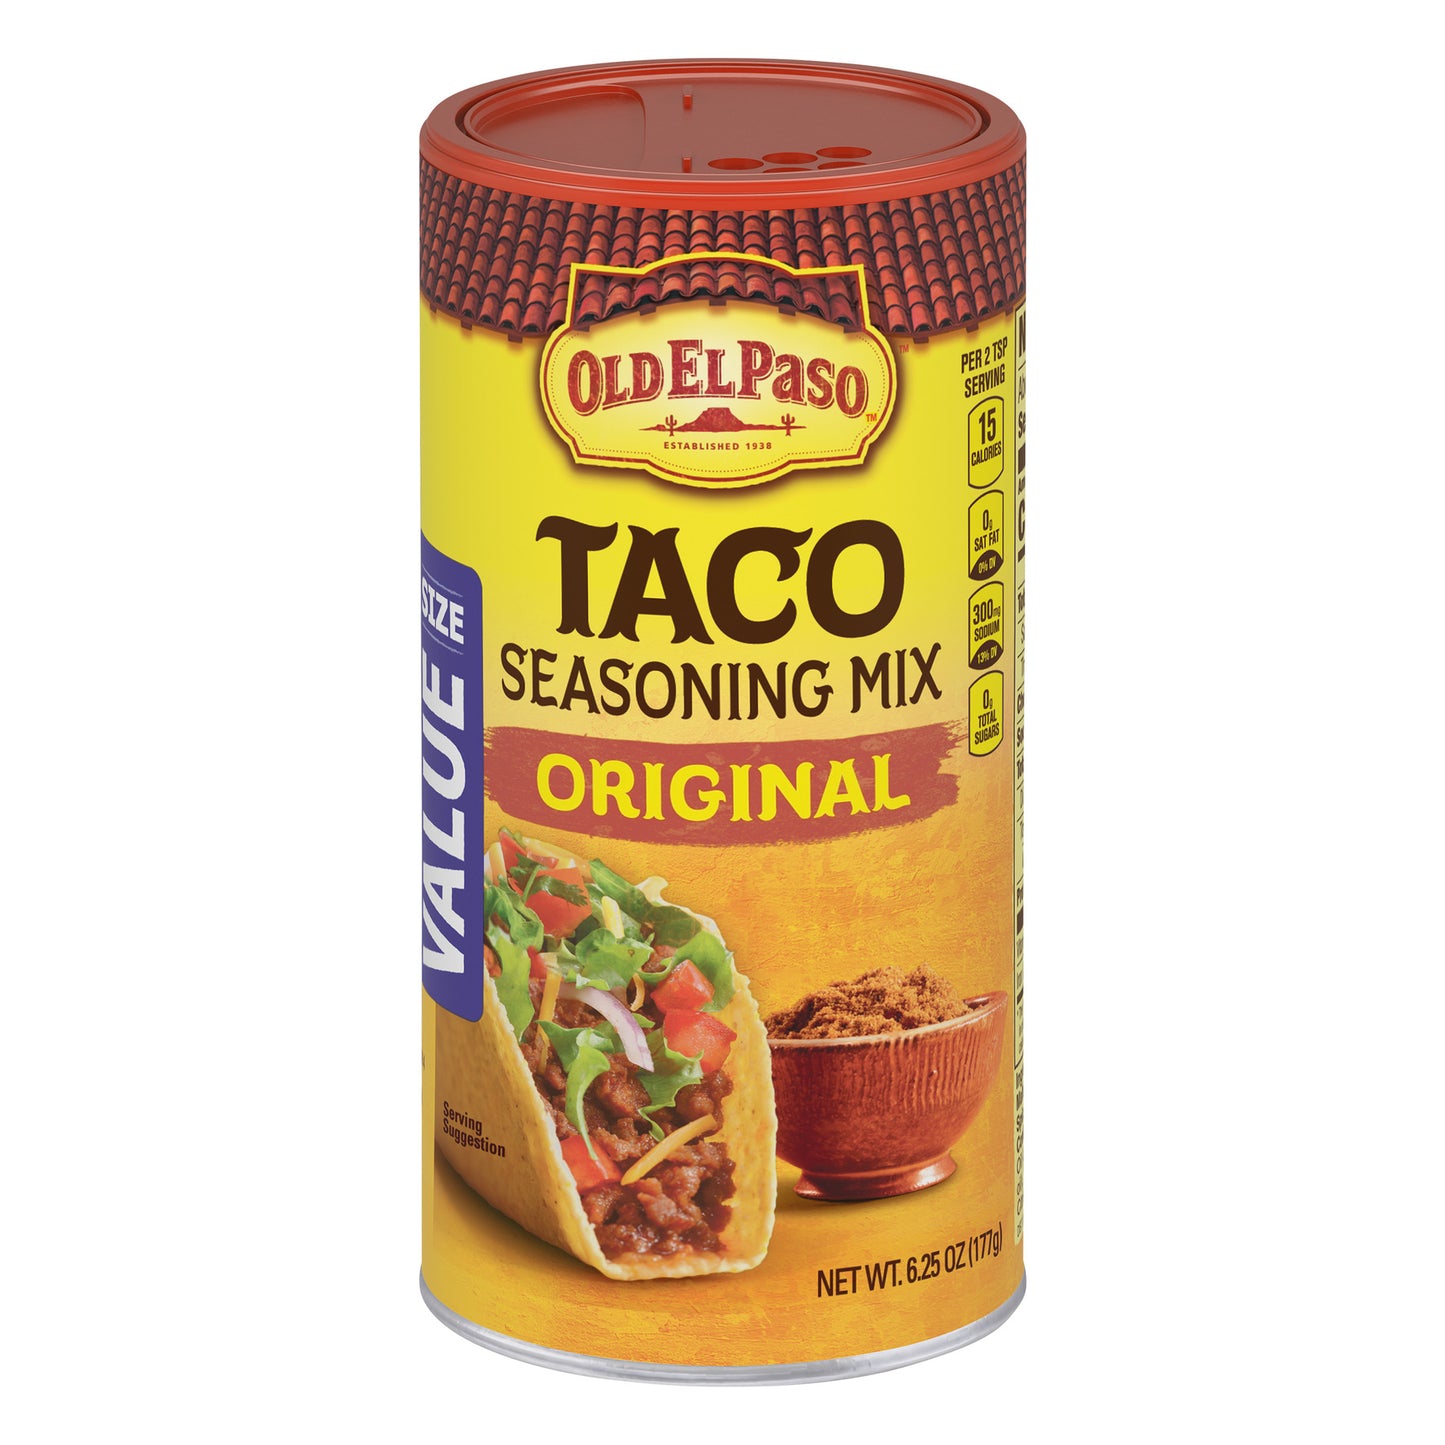 Old El Paso Taco Original Seasoning, 6.25 oz